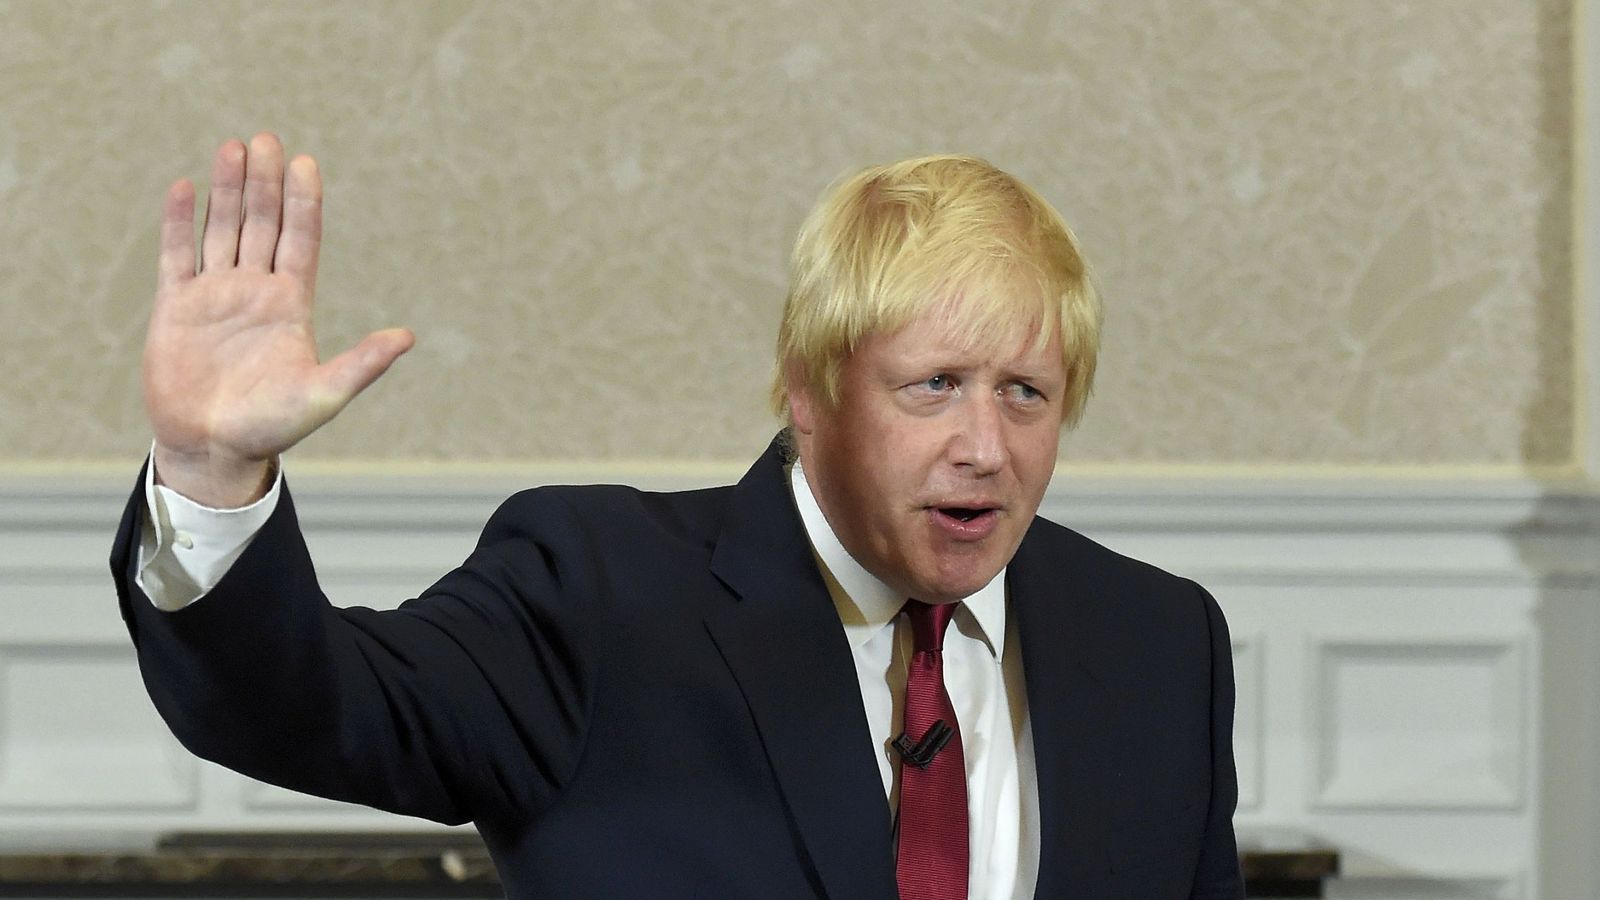 Foto: El líder de la campaña pro-Brexit y exalcalde de Londres, Boris Johnson, tras su discurso en Londres, el 30 de junio de 2016. (Reuters)